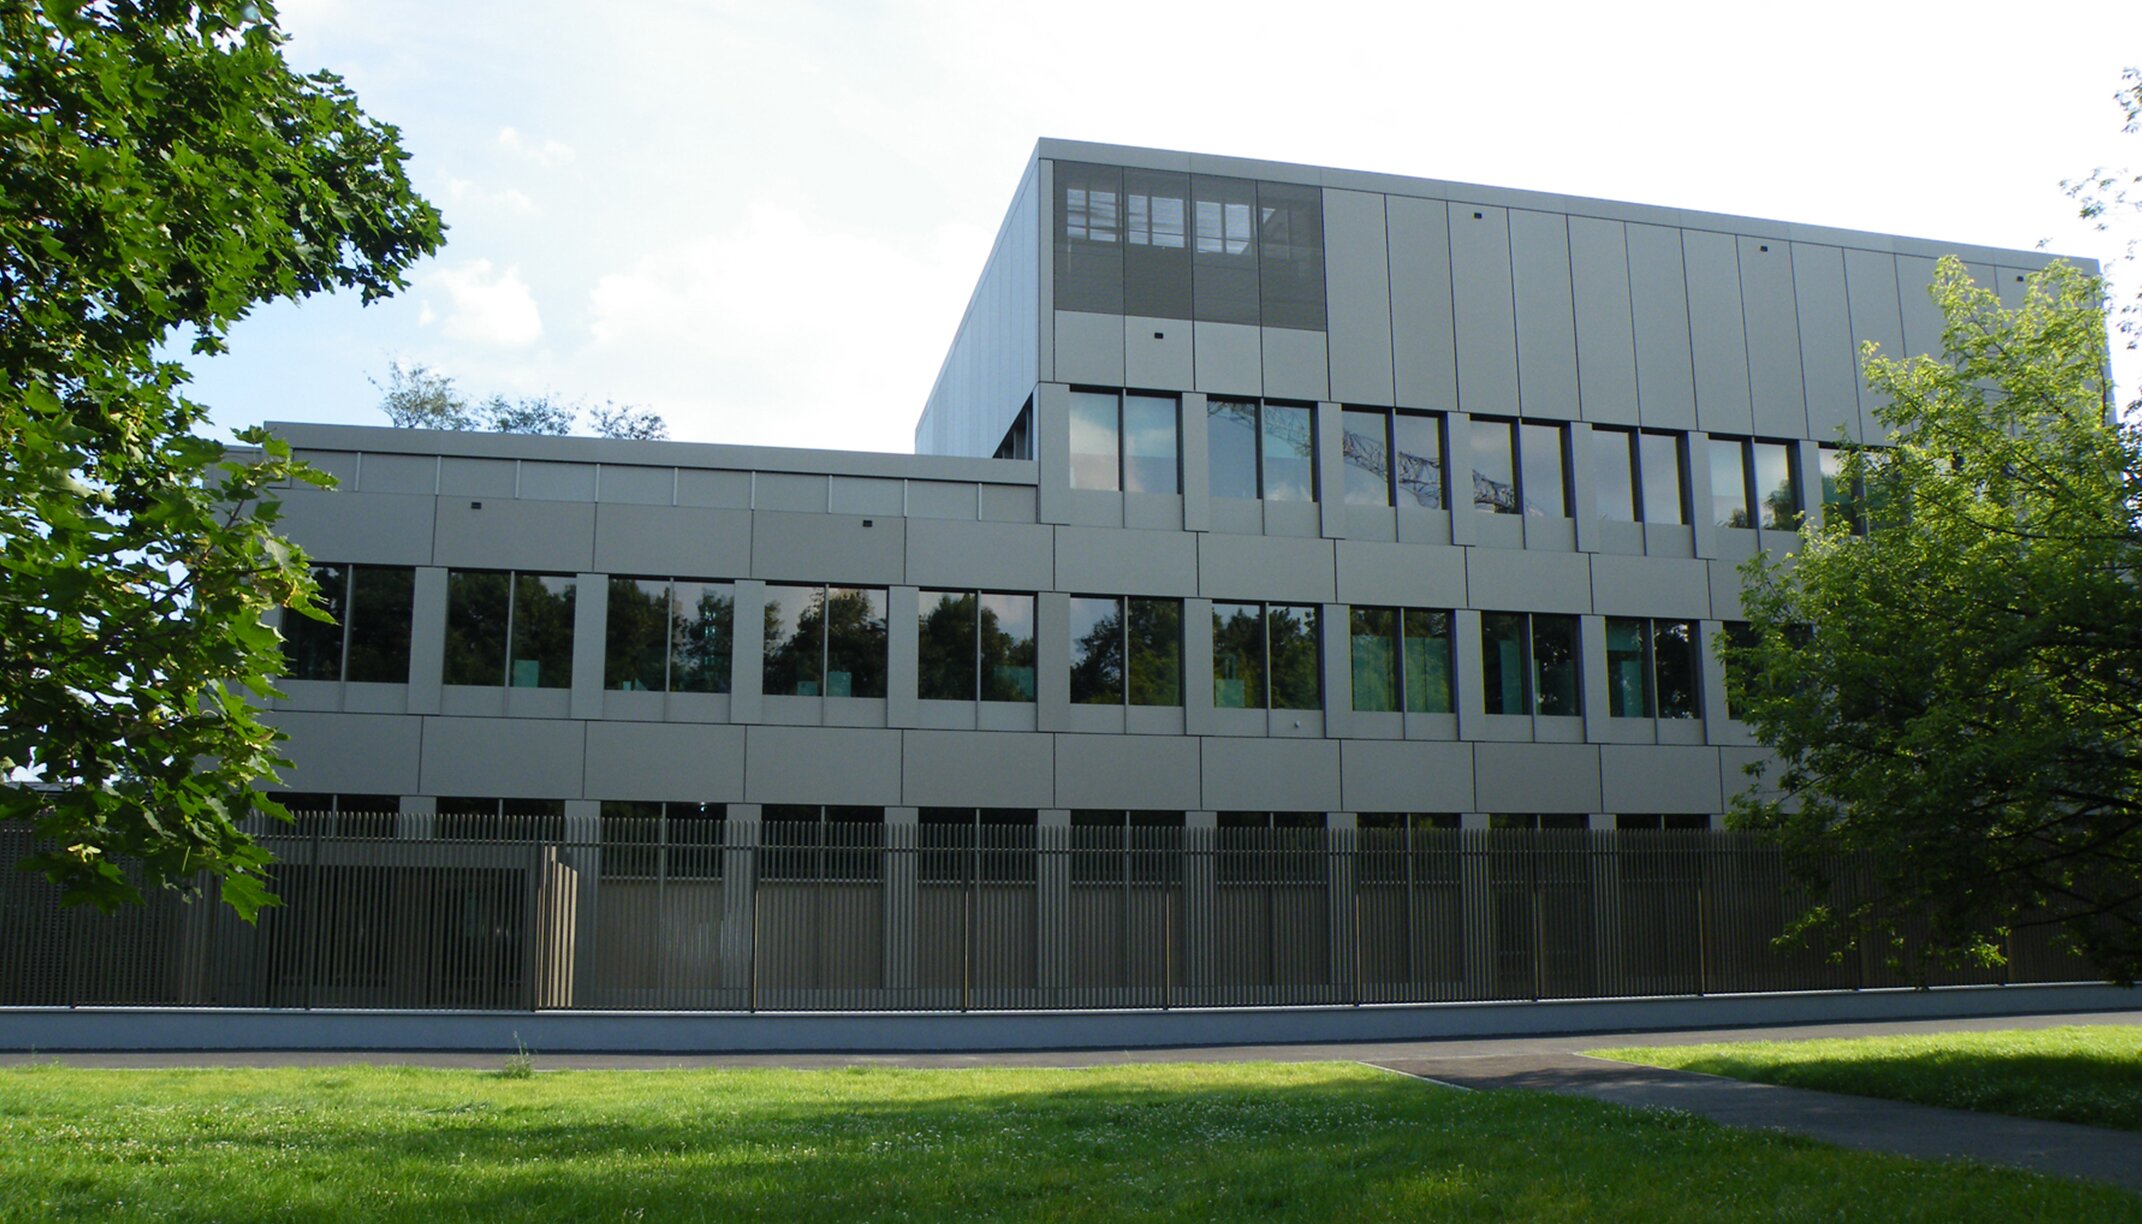 Detailview "Britische Botschaft Warschau"; advanced aluminum facade design 